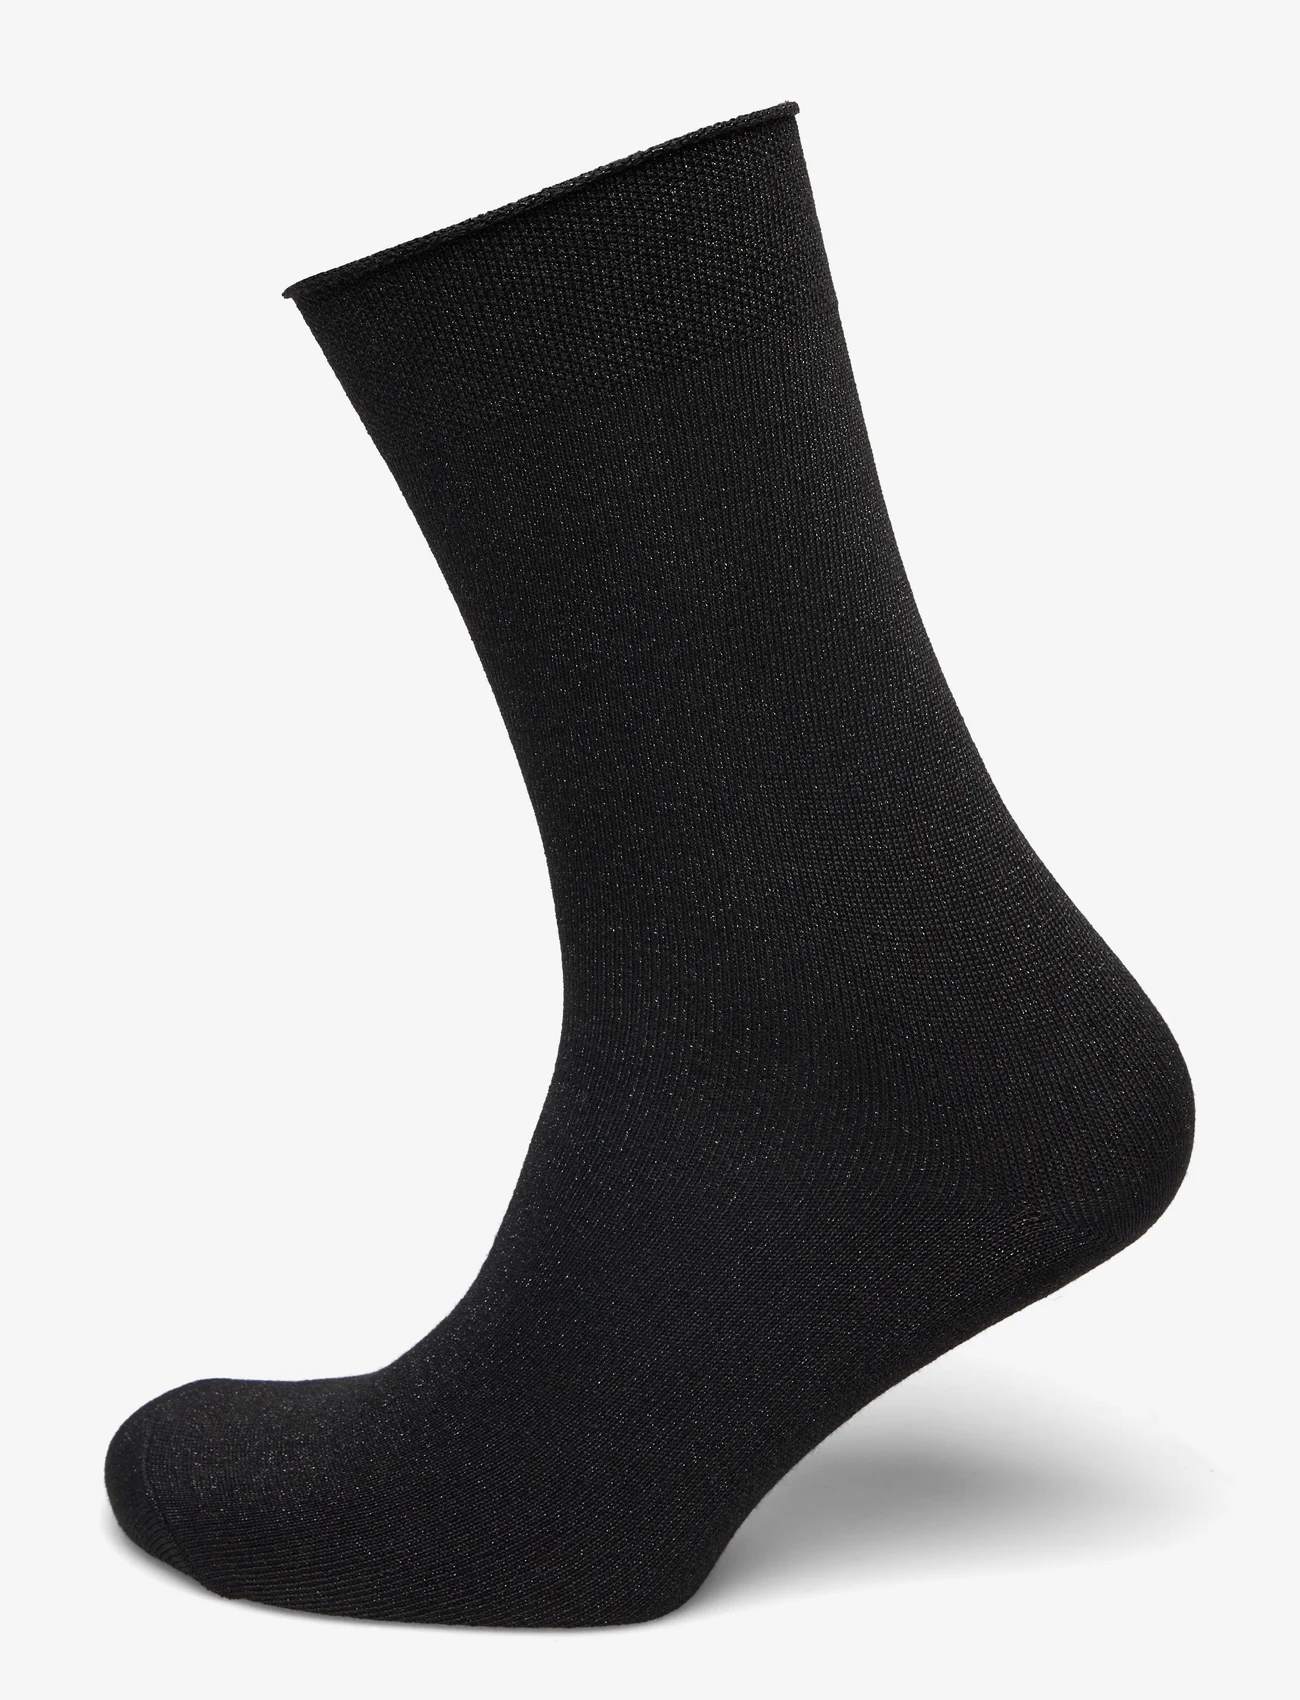 mp Denmark - Lucinda socks - lowest prices - black - 0